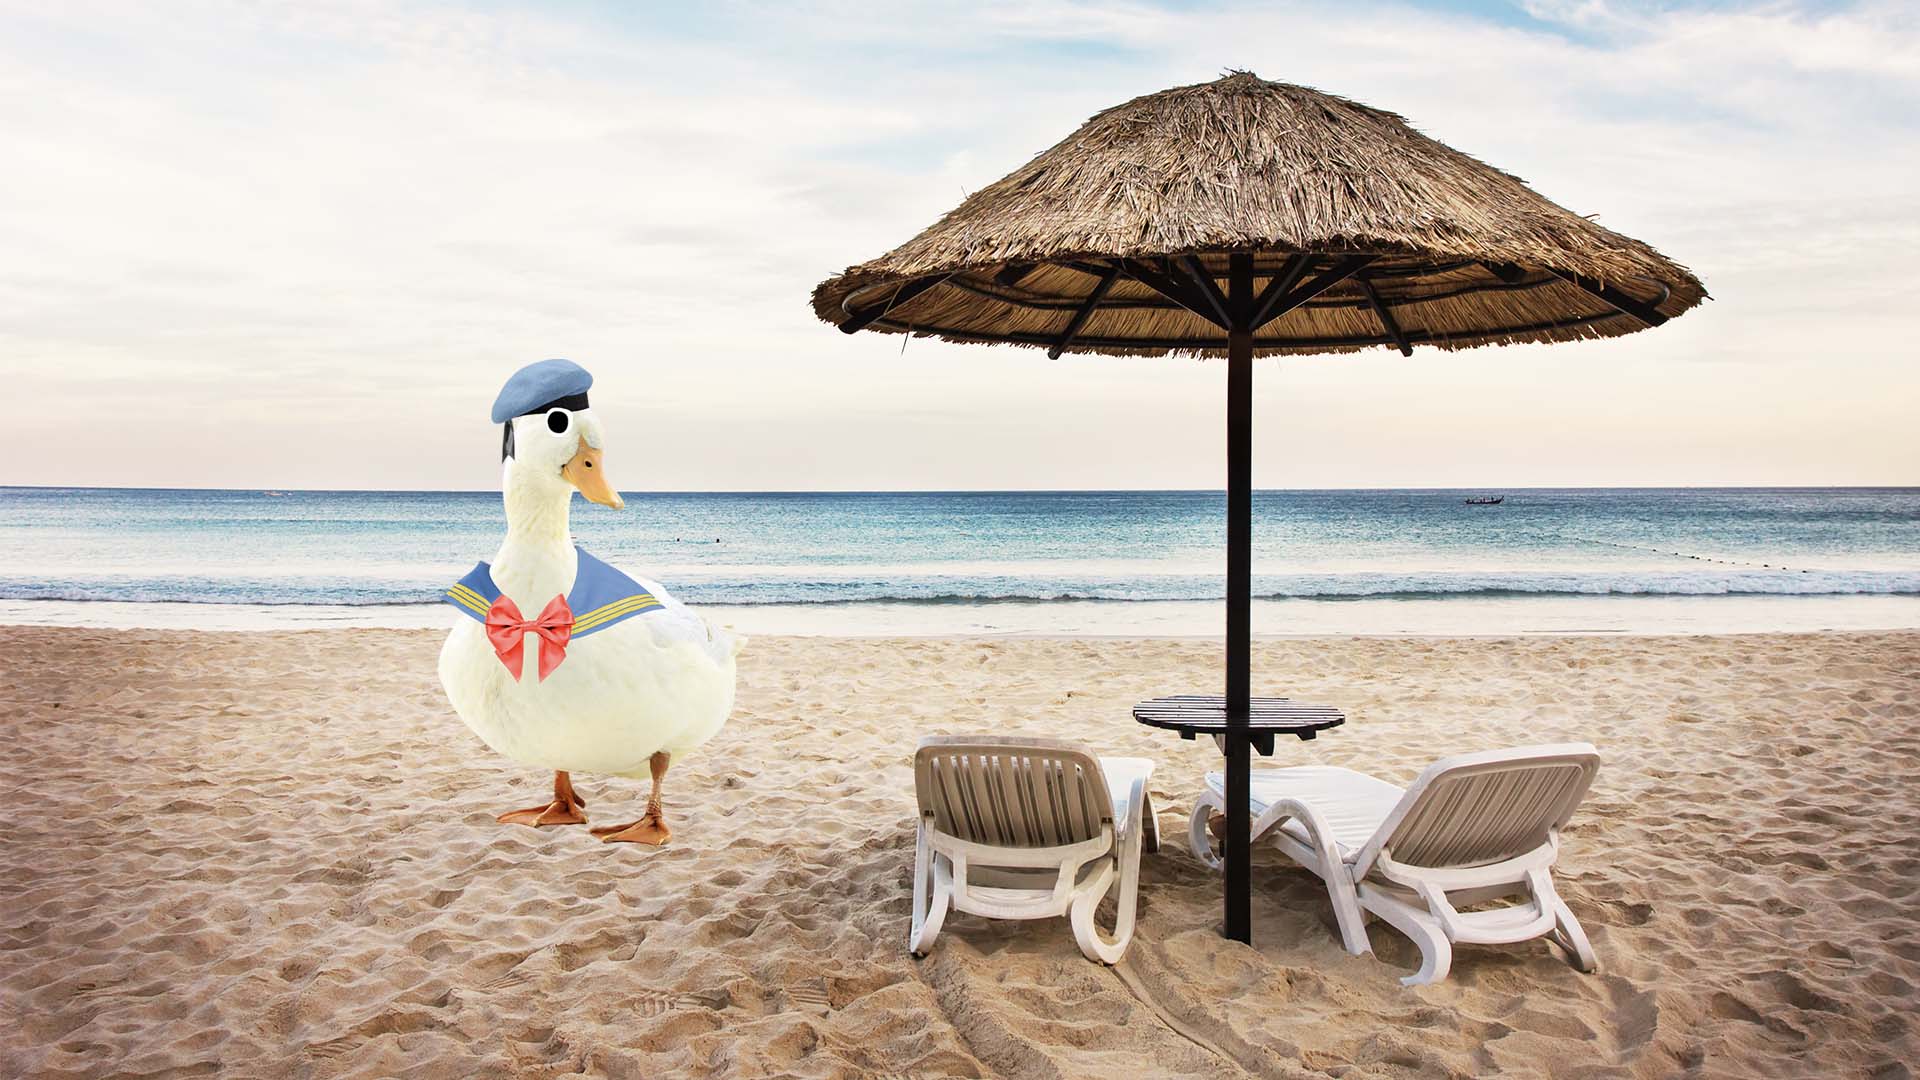 A duck on a sandy beach